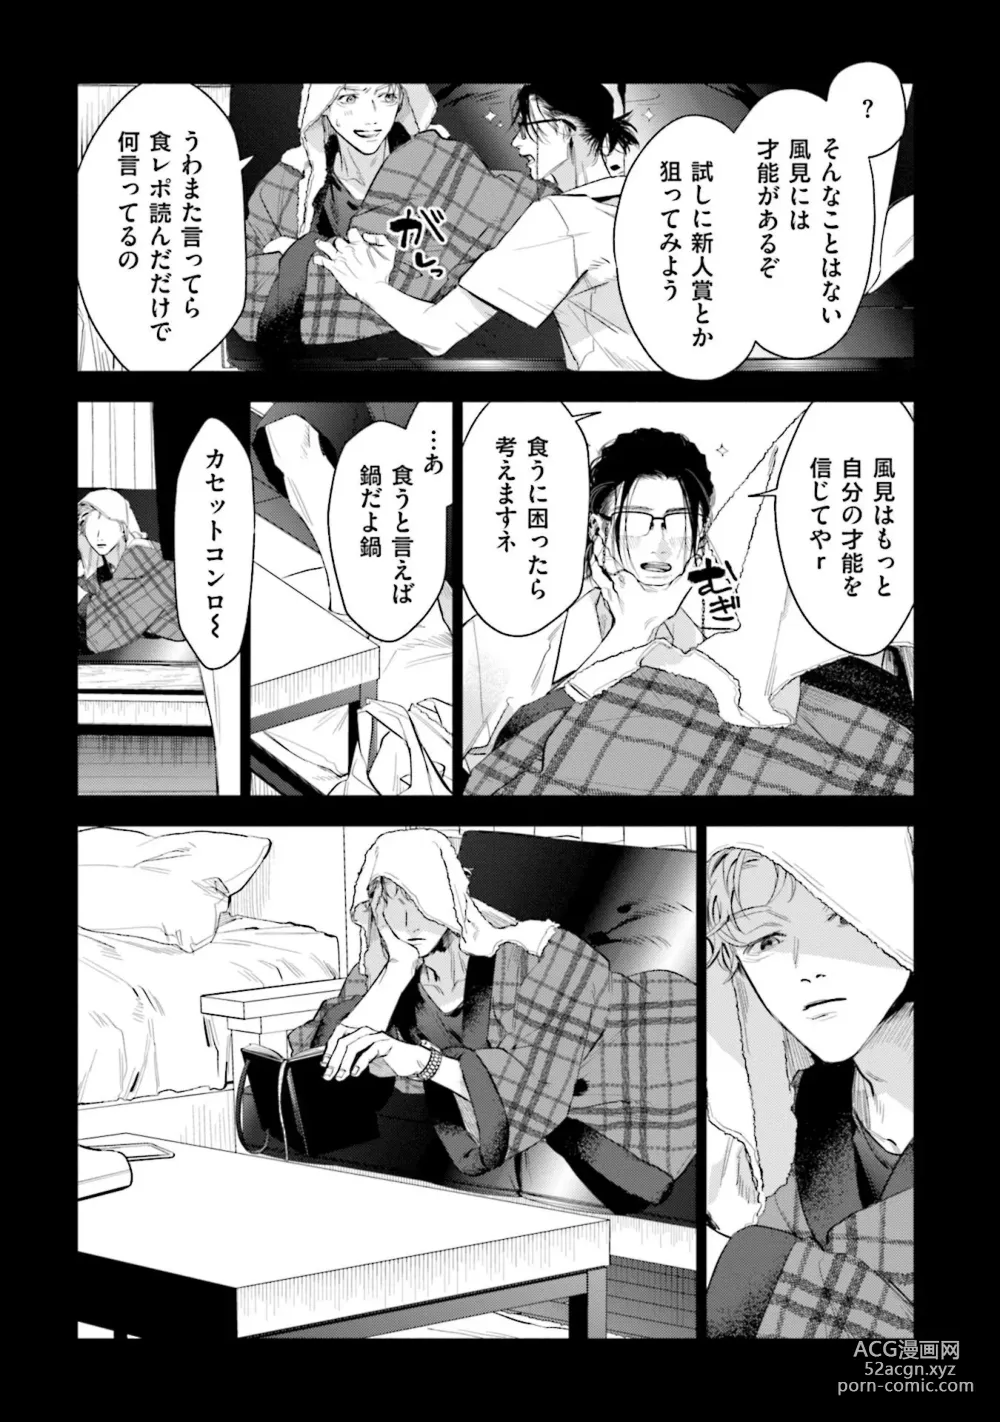 Page 13 of manga Hitoriyogari no Vanilla